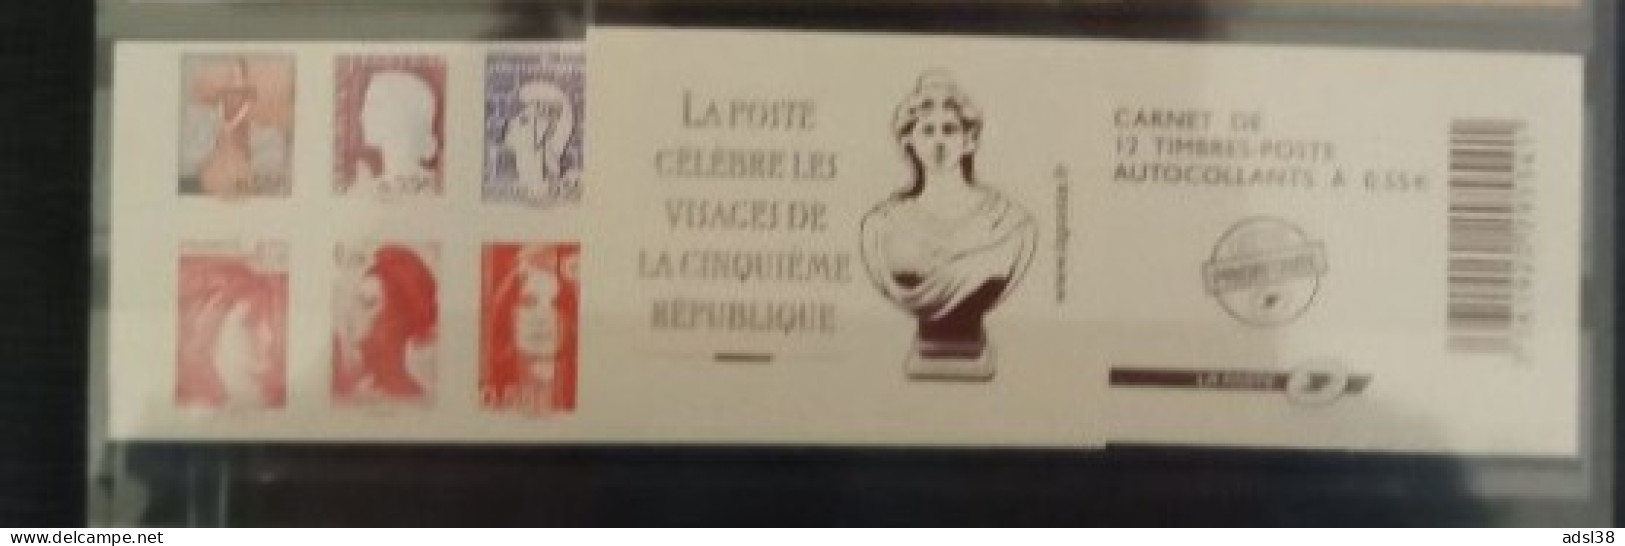 France - Carnet Visages Vème République - 1518 - Gelegenheidsboekjes